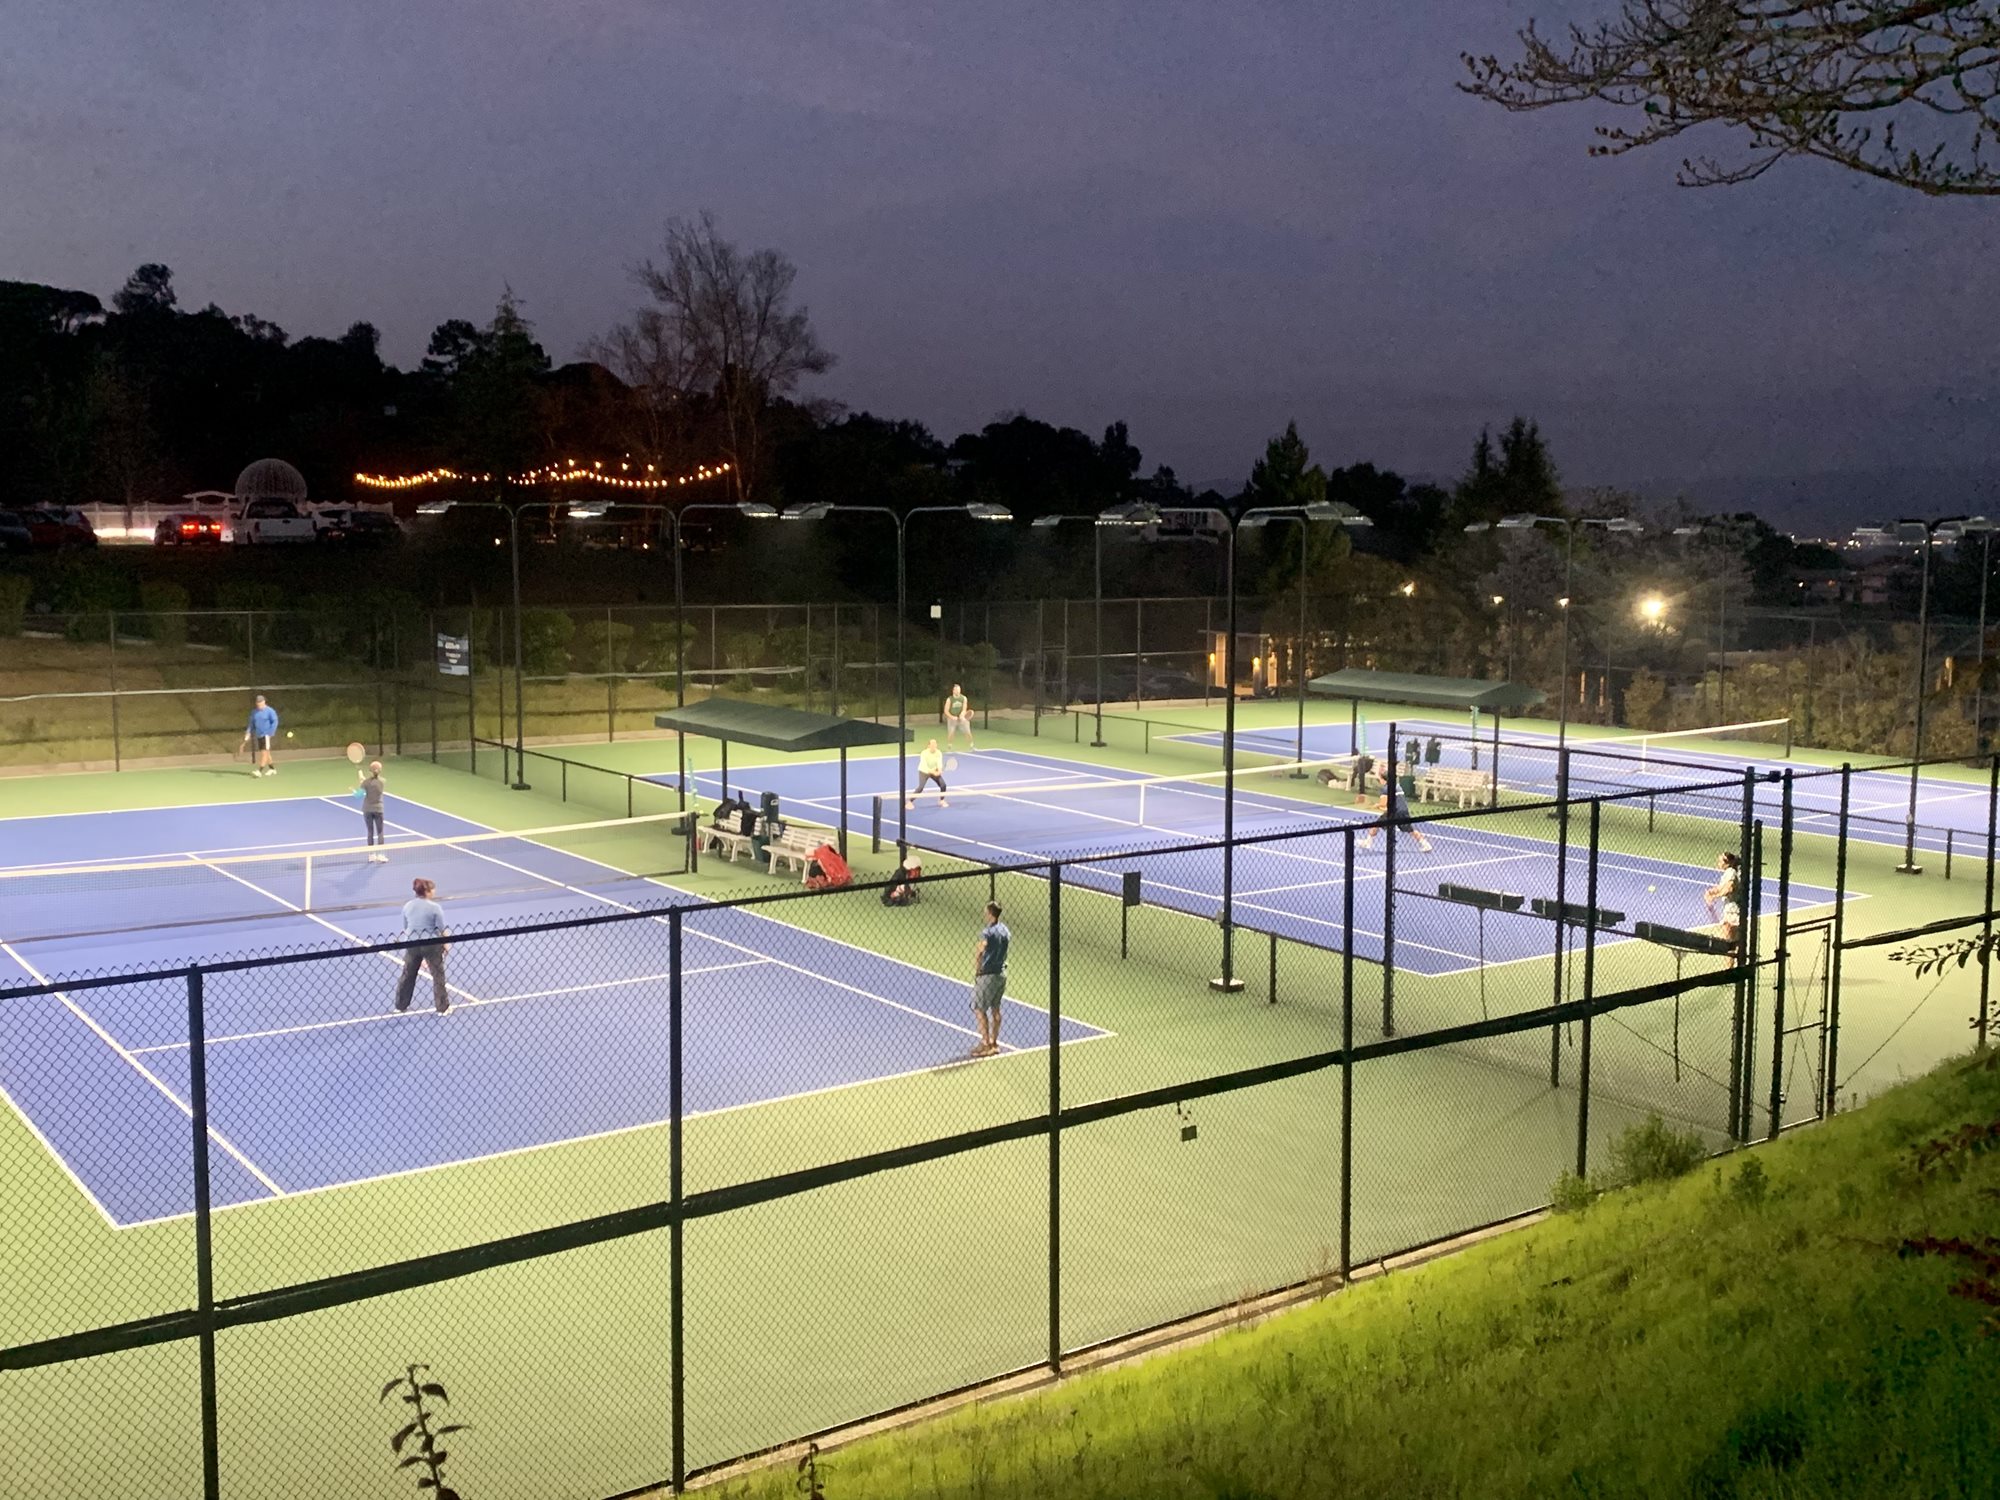 lighted-tennis-night